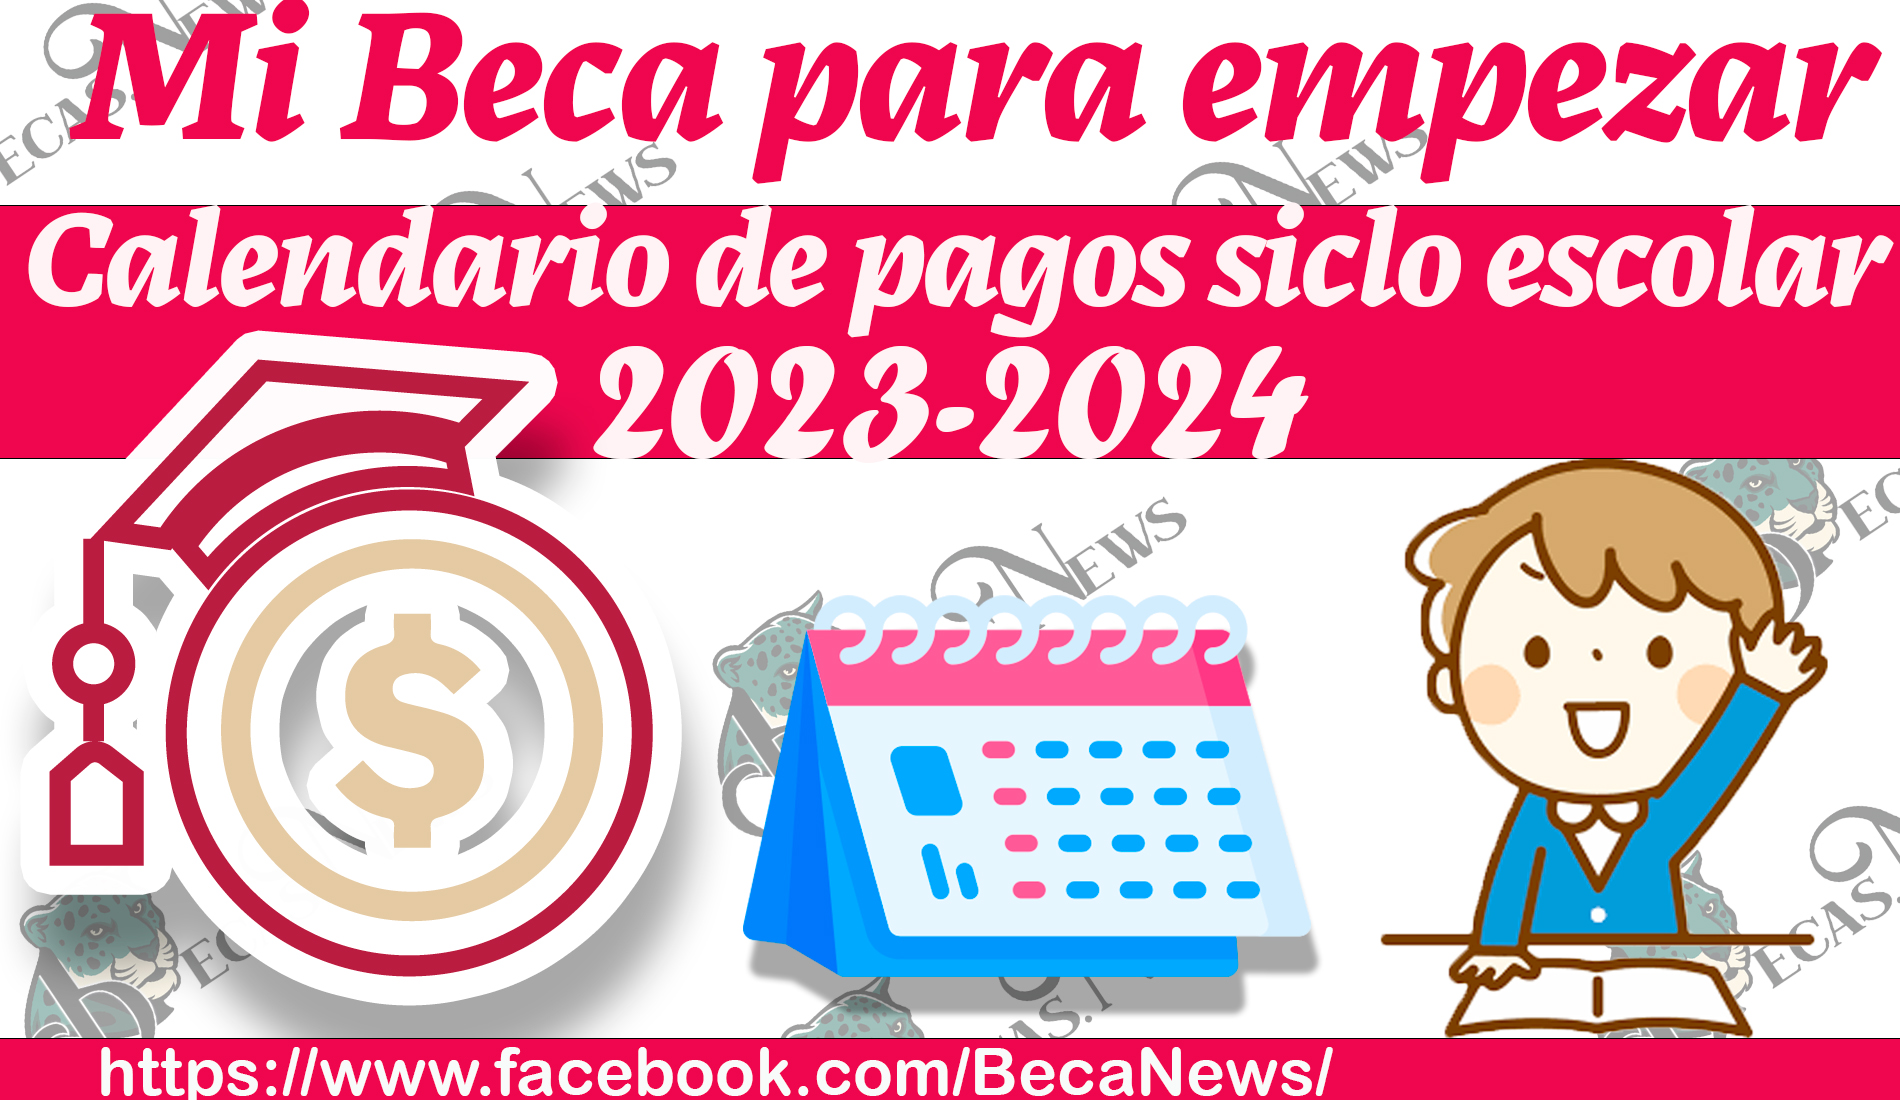 CALENDARIO DE PAGOS MI BECA PARA EMPEZAR 2023-2024